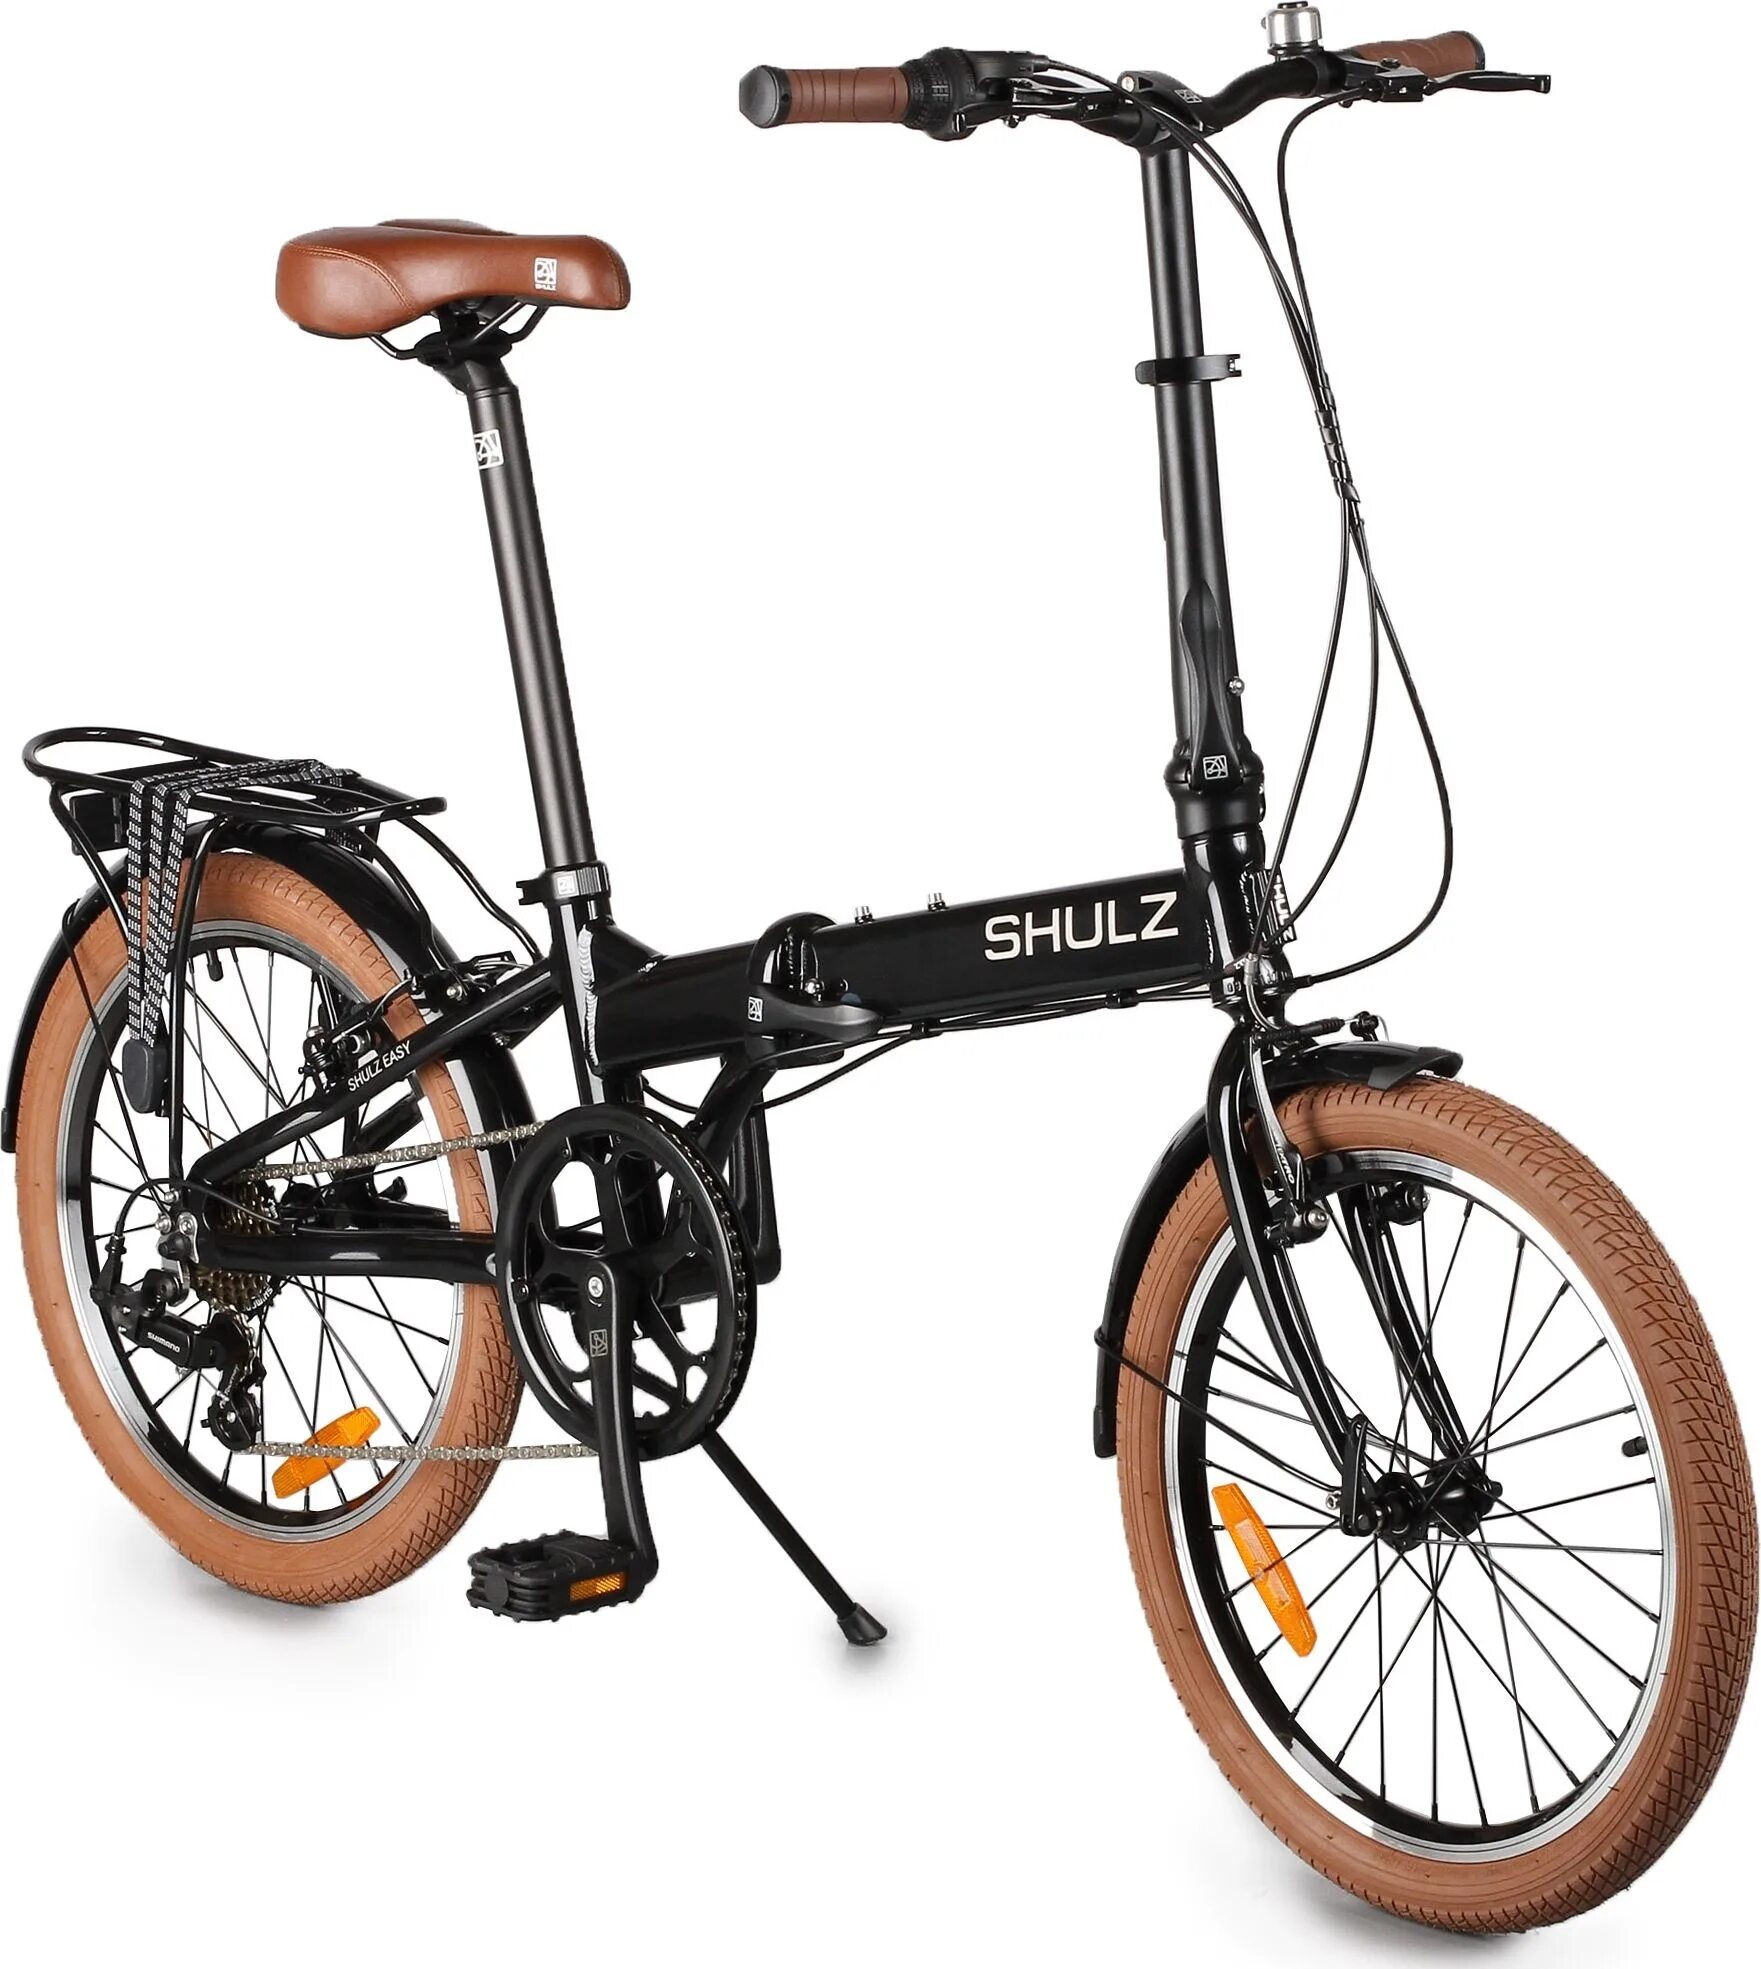 Городской велосипед Shulz easy. Складной велосипед Shulz easy. Городской велосипед Shulz Lentus. Велосипед Шульц складной алюминиевый. Велосипеды складные взрослые легкие